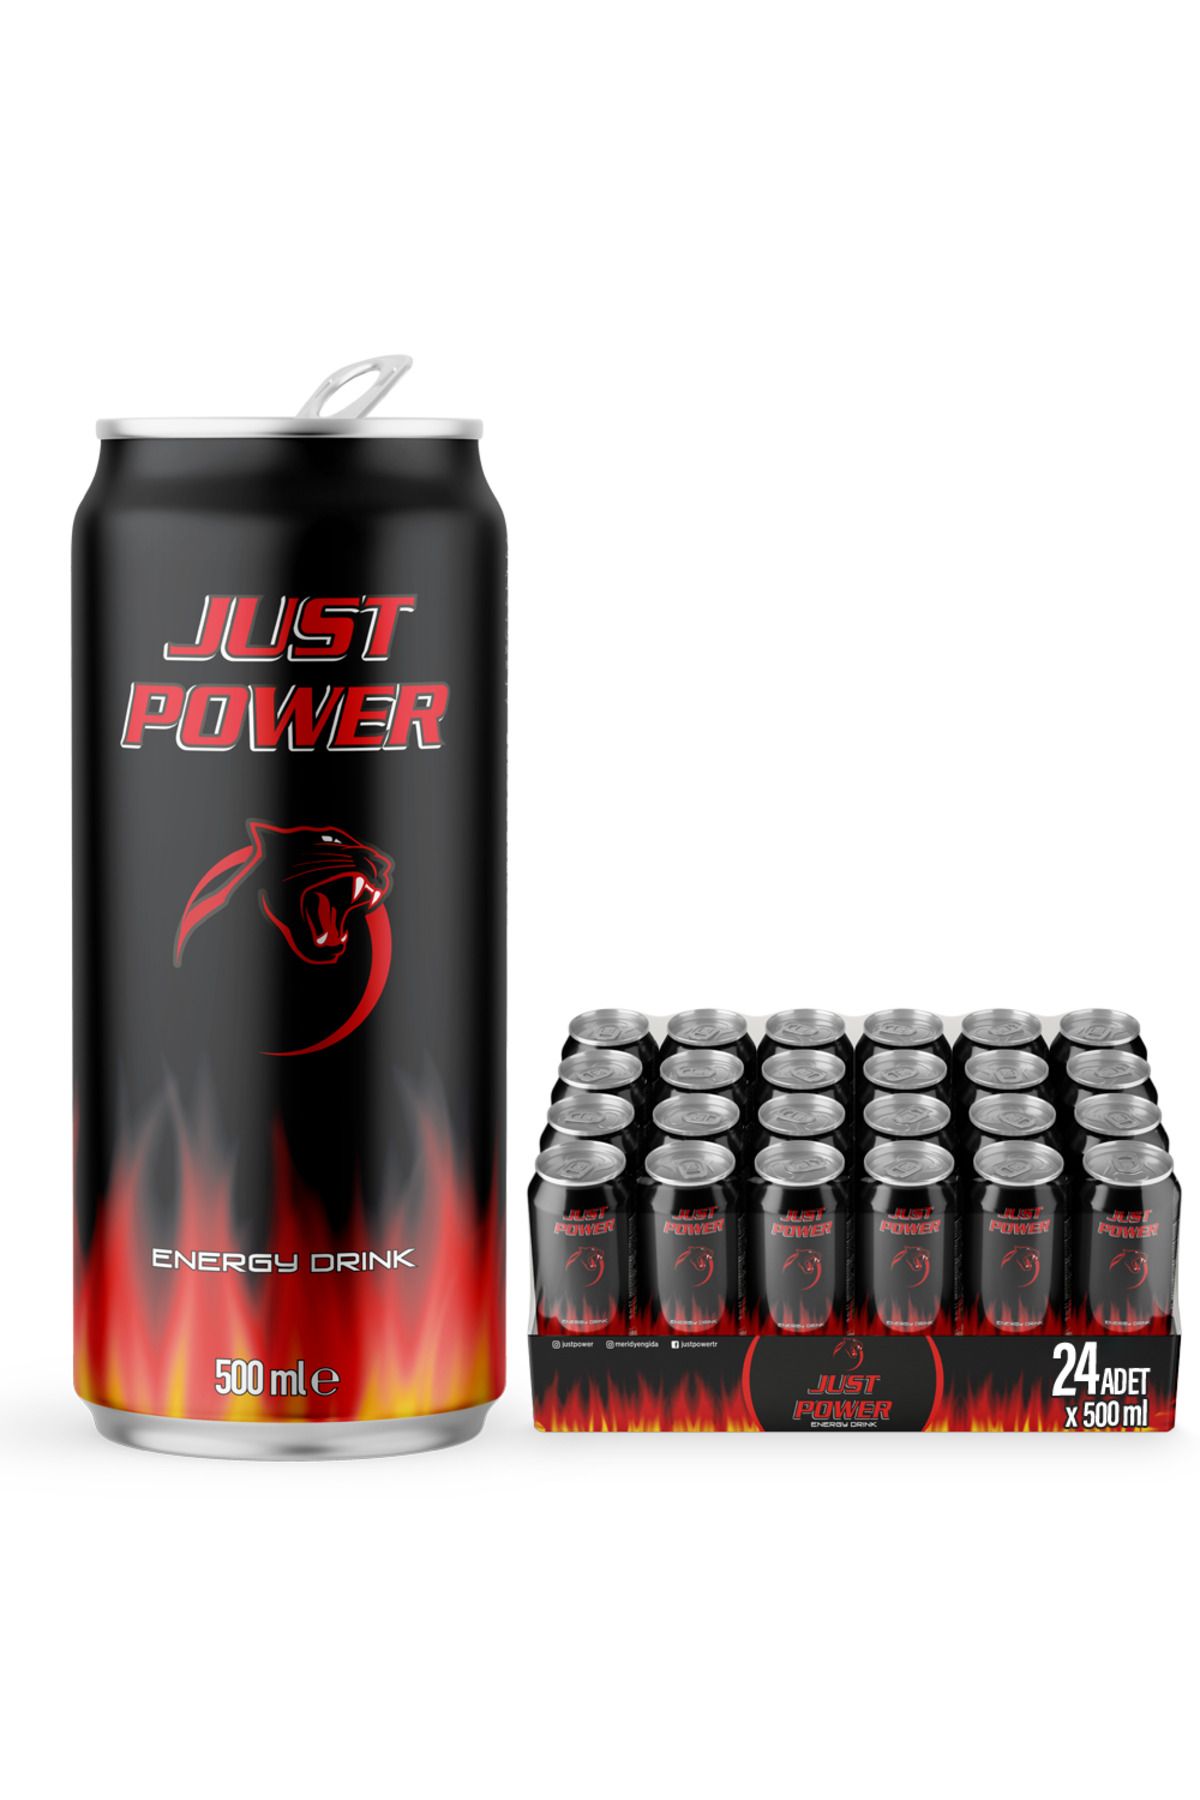 Just Power Enerji Içeceği, 500 ml (24'LÜ PAKET, 24 ADET X 500 ML)